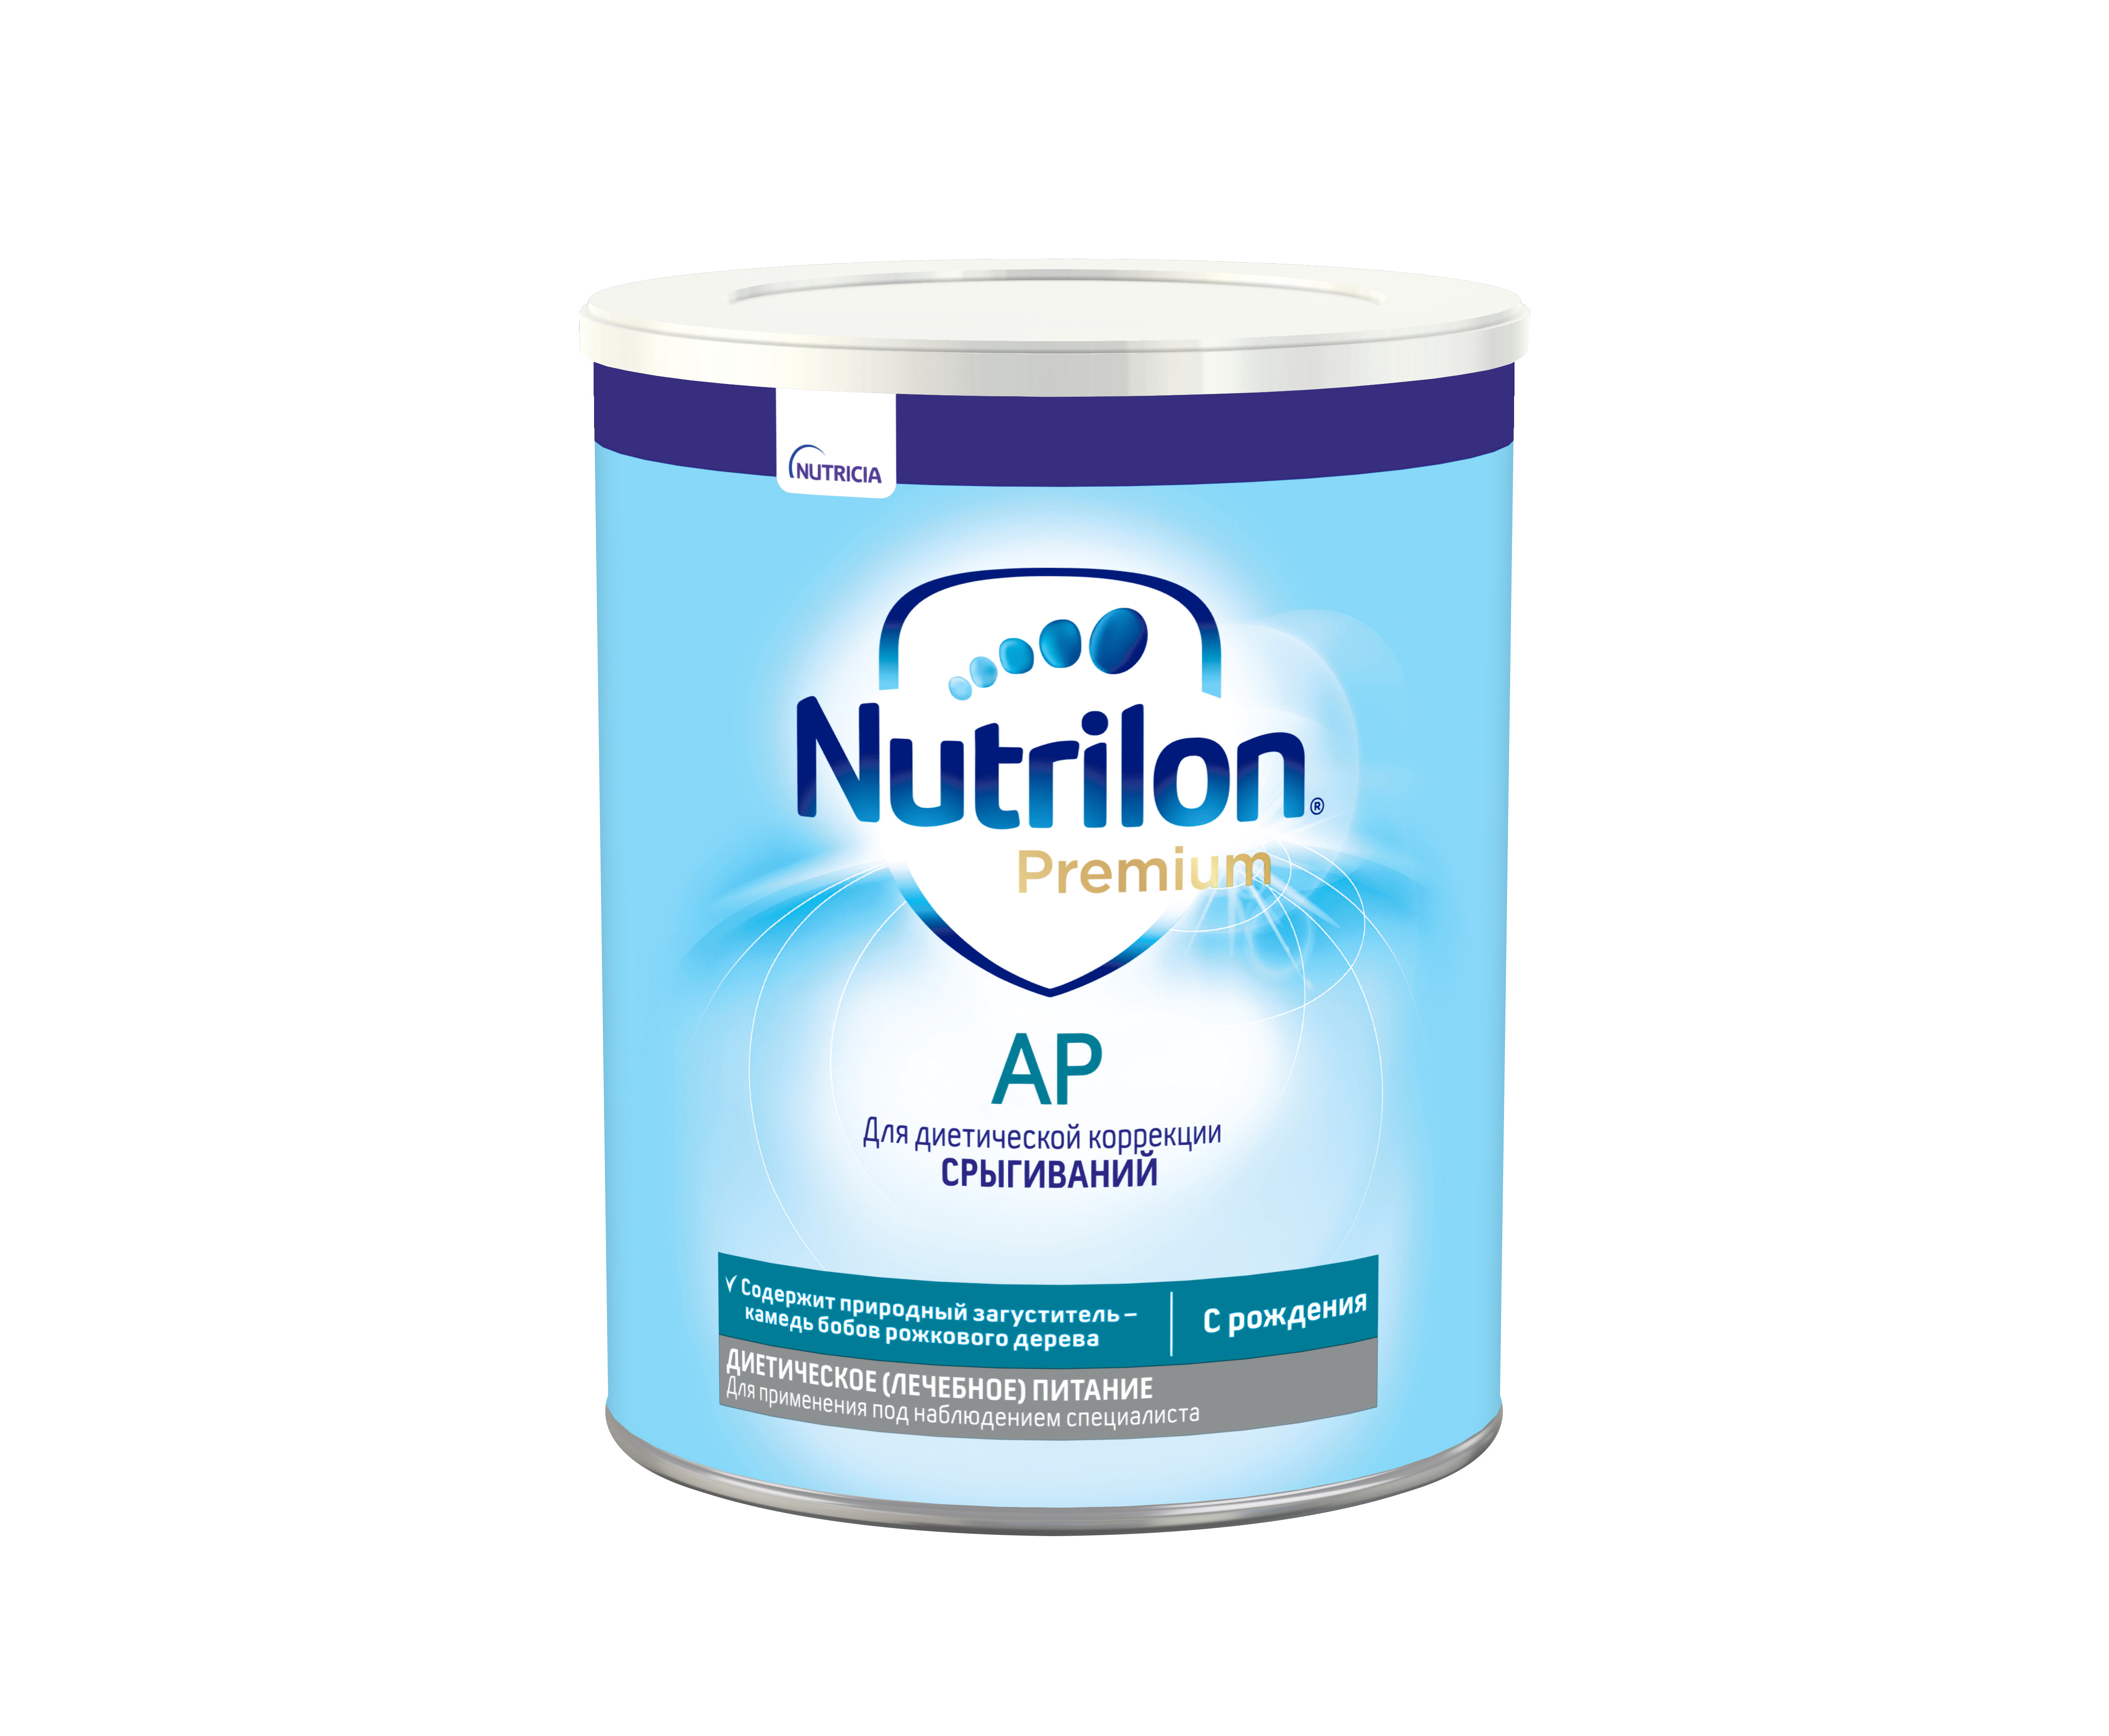 ნუტრილონი პრემიუმი ანტირეფლუქსი / Nutrilon Premium AR